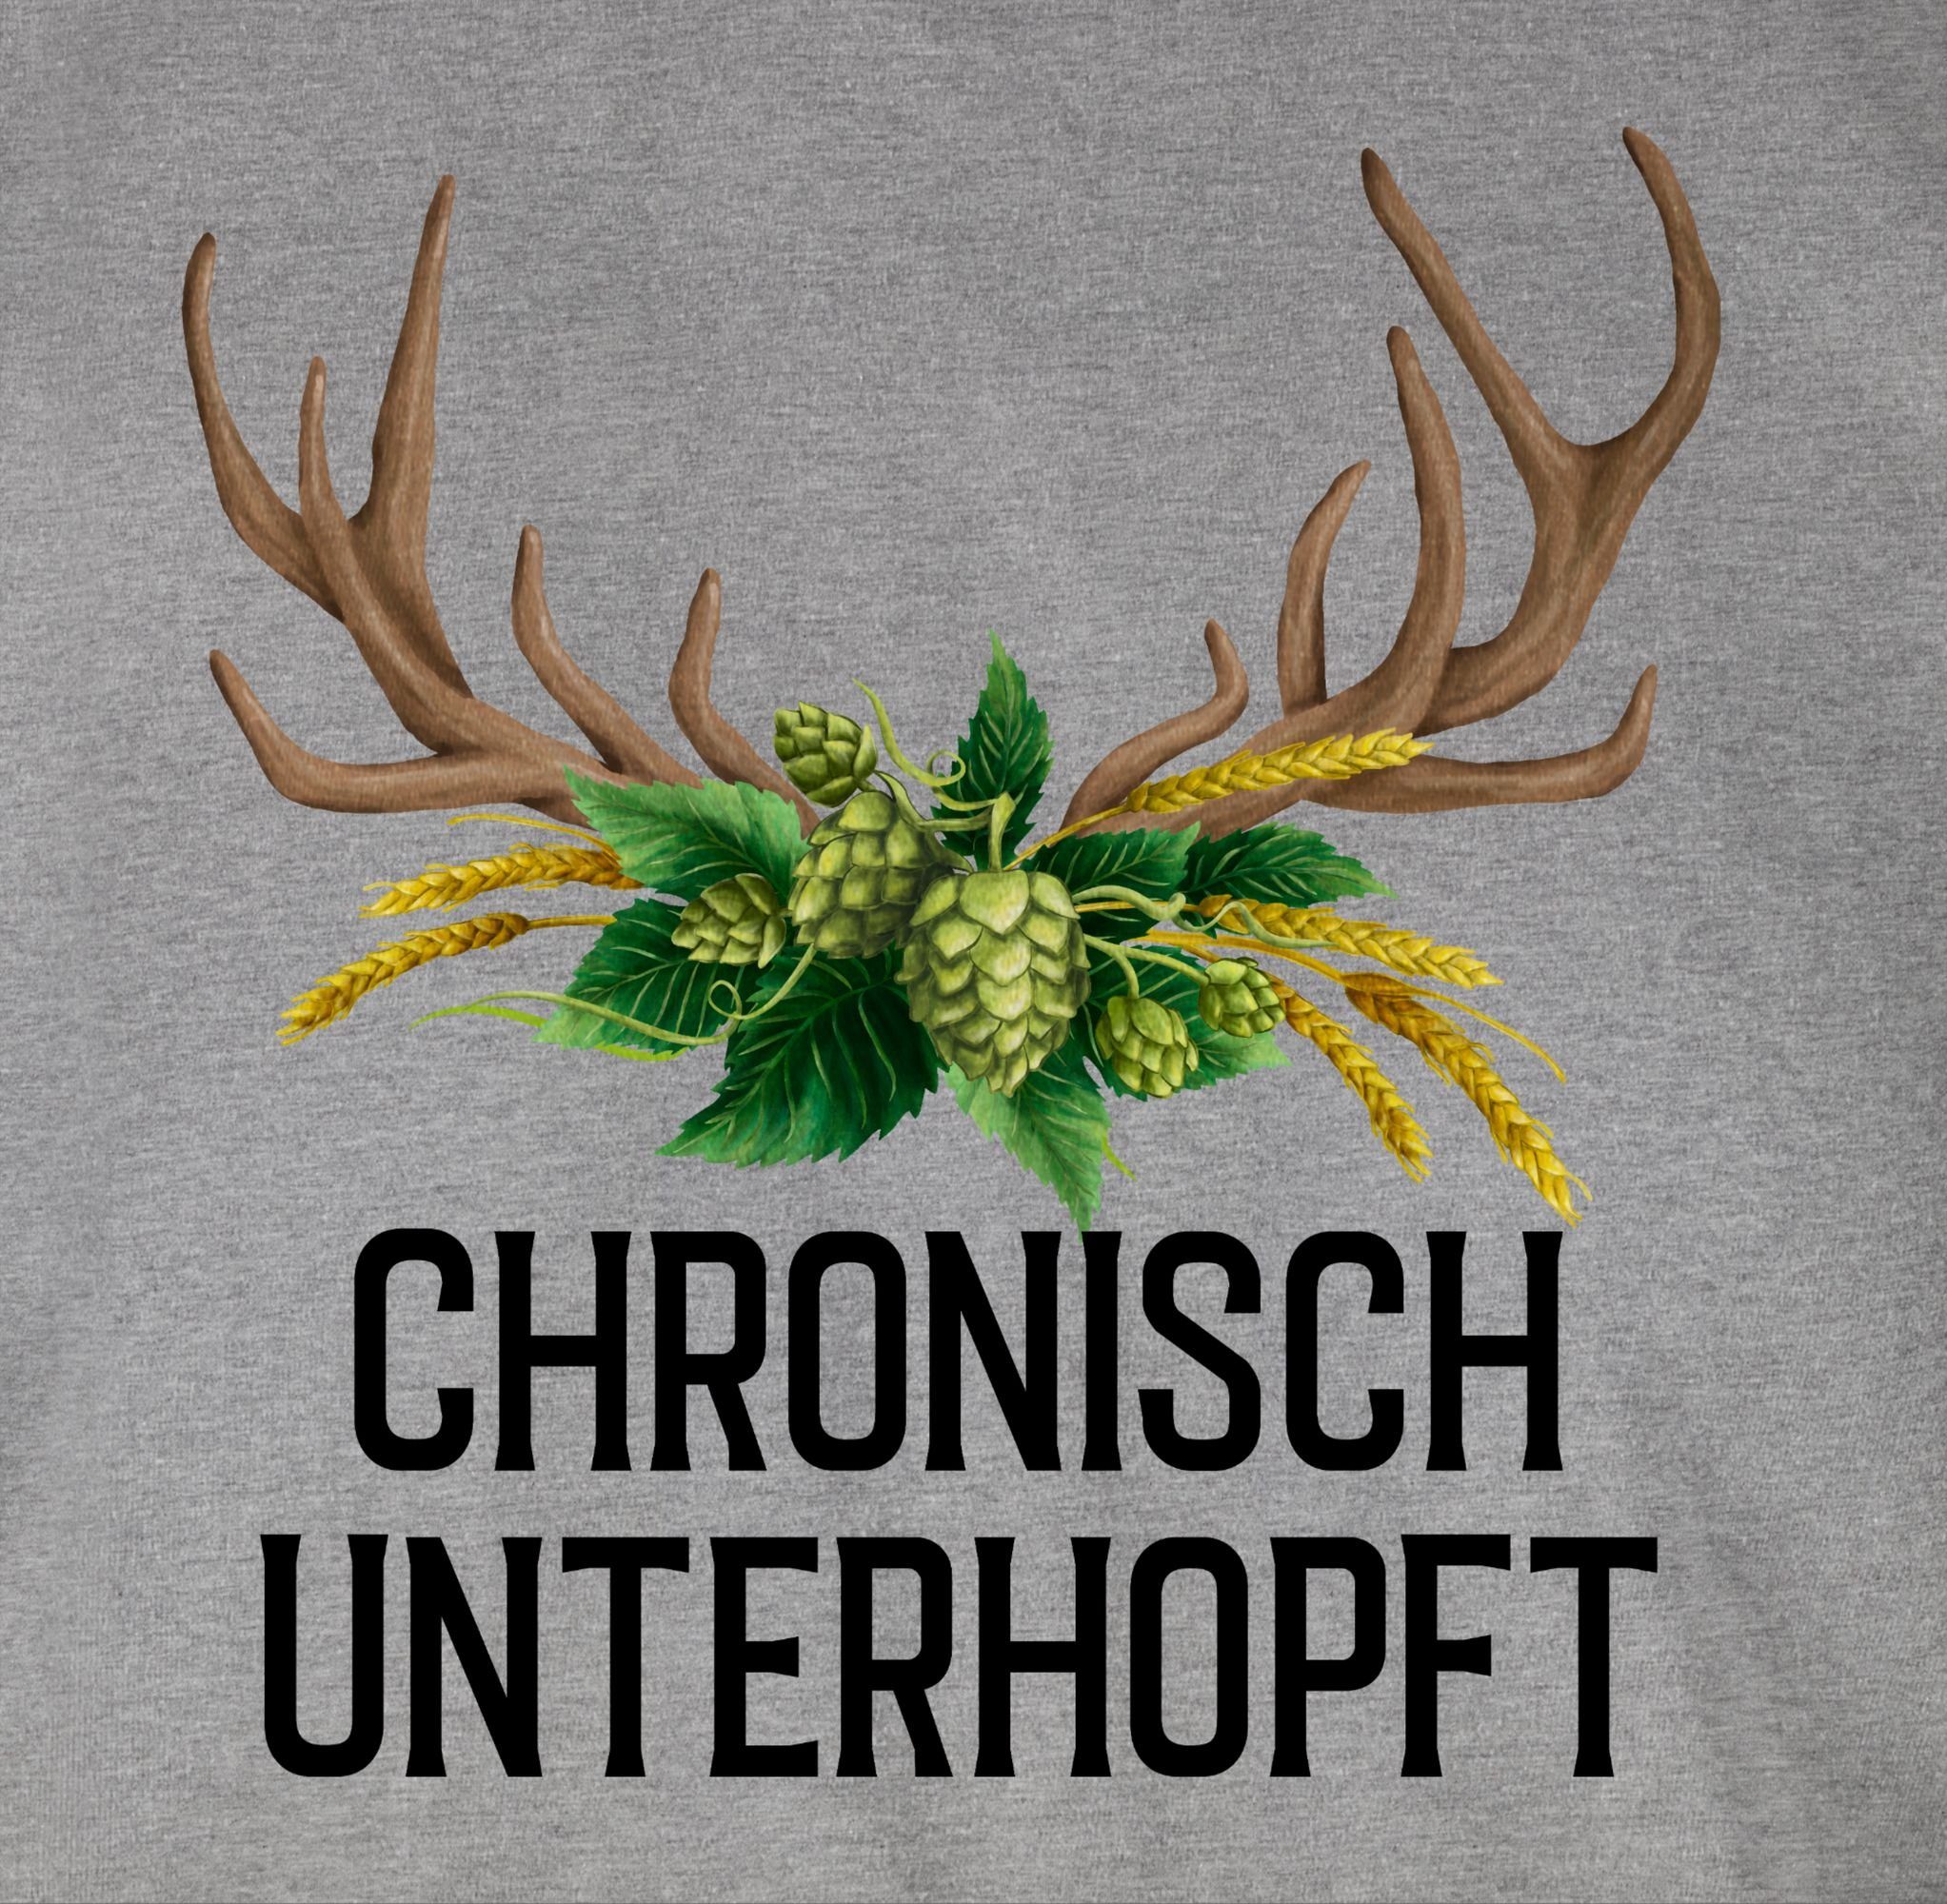 Grau für Weizen und - Hopfen Oktoberfest Mode unterhopft Herren T-Shirt Hirschgeweih Chronisch 03 Shirtracer meliert